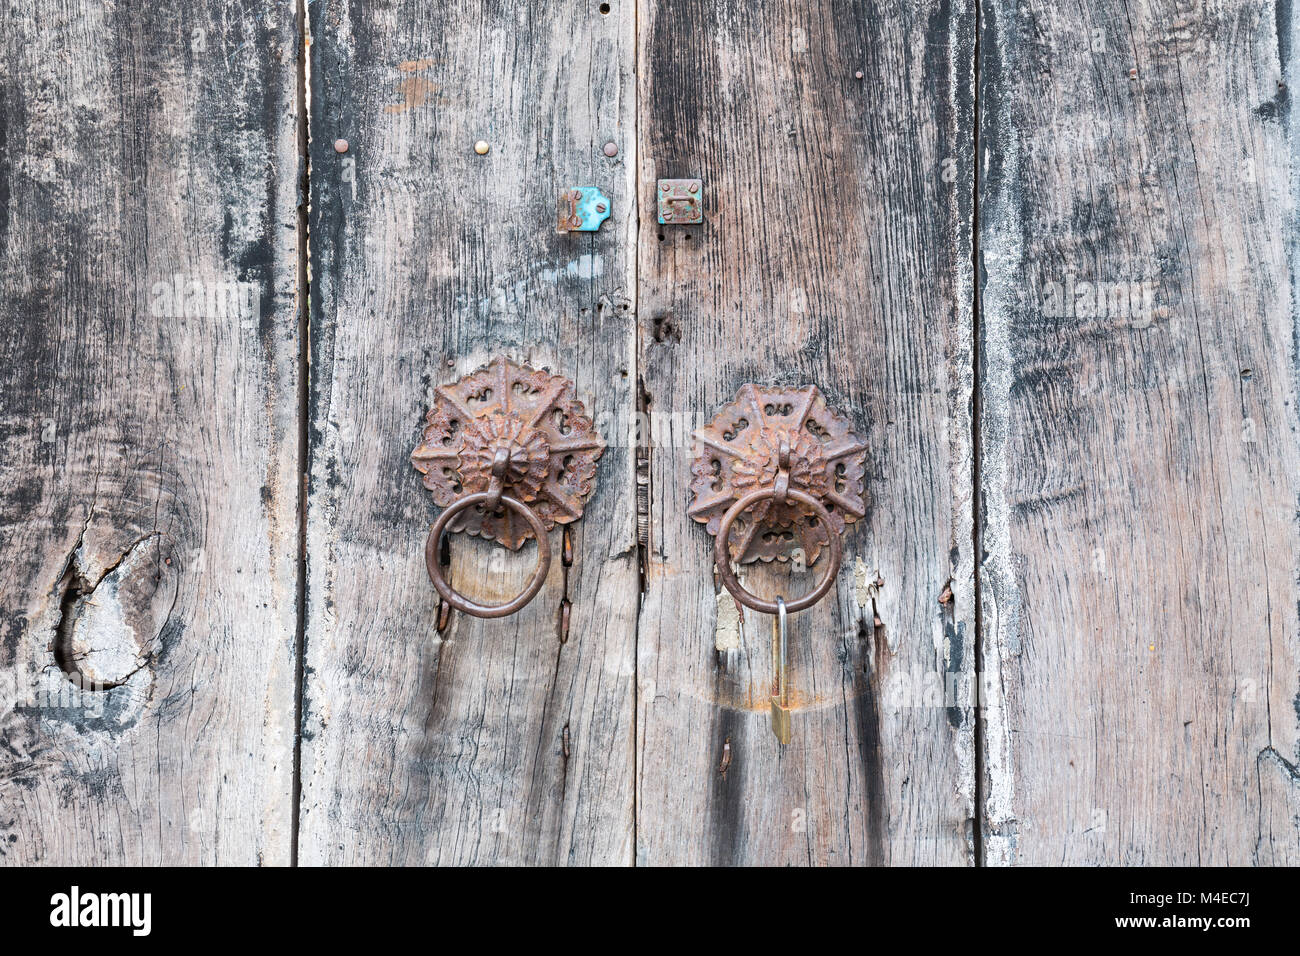 aged wooden door knocker Stock Photo